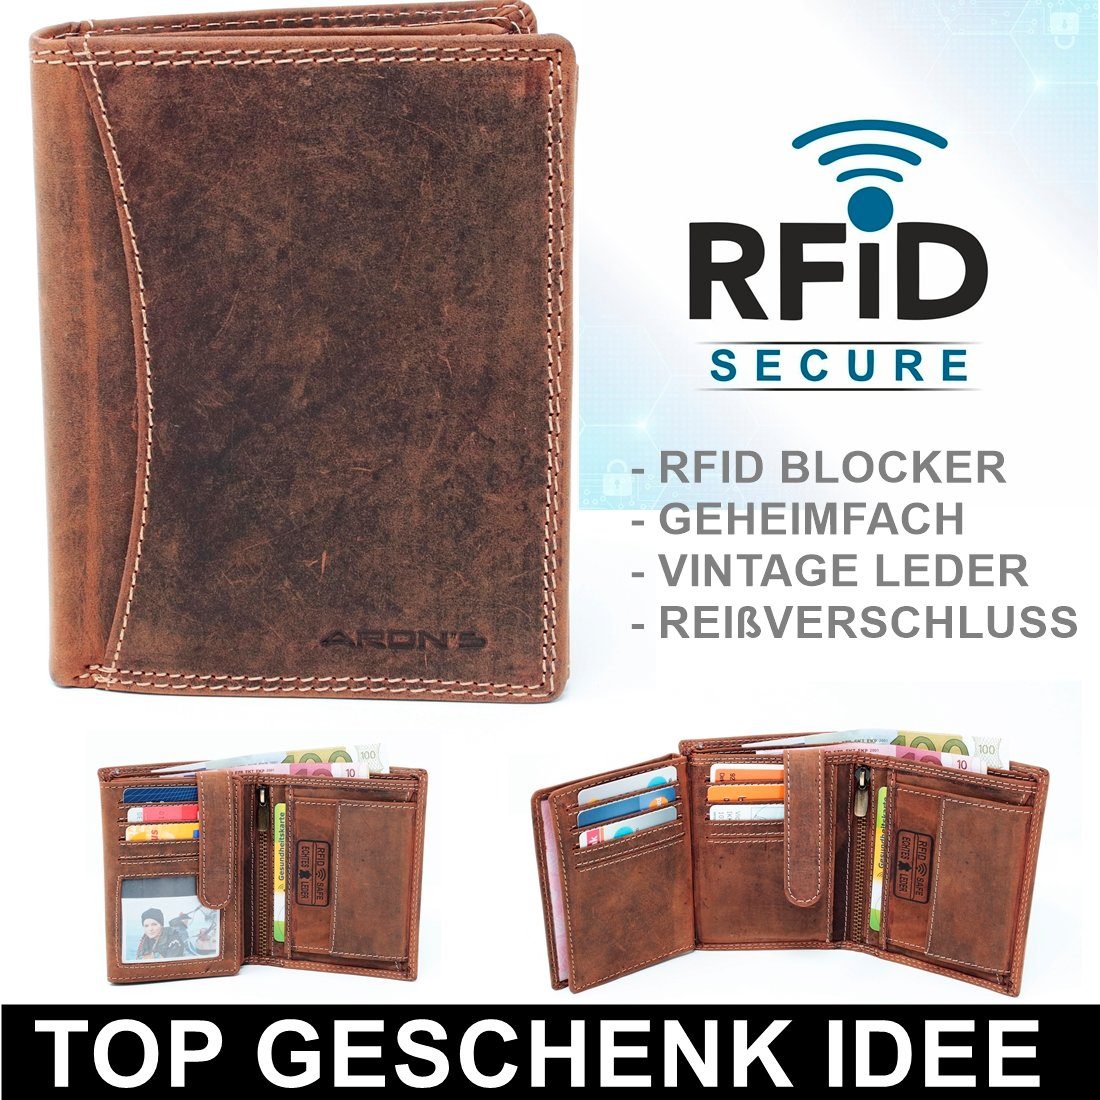 Schutz Herren RFID SHG Brieftasche mit Münzfach Portemonnaie Leder Geldbörse Lederbörse Männerbörse Geldbeutel Börse RFID, Geldbörse